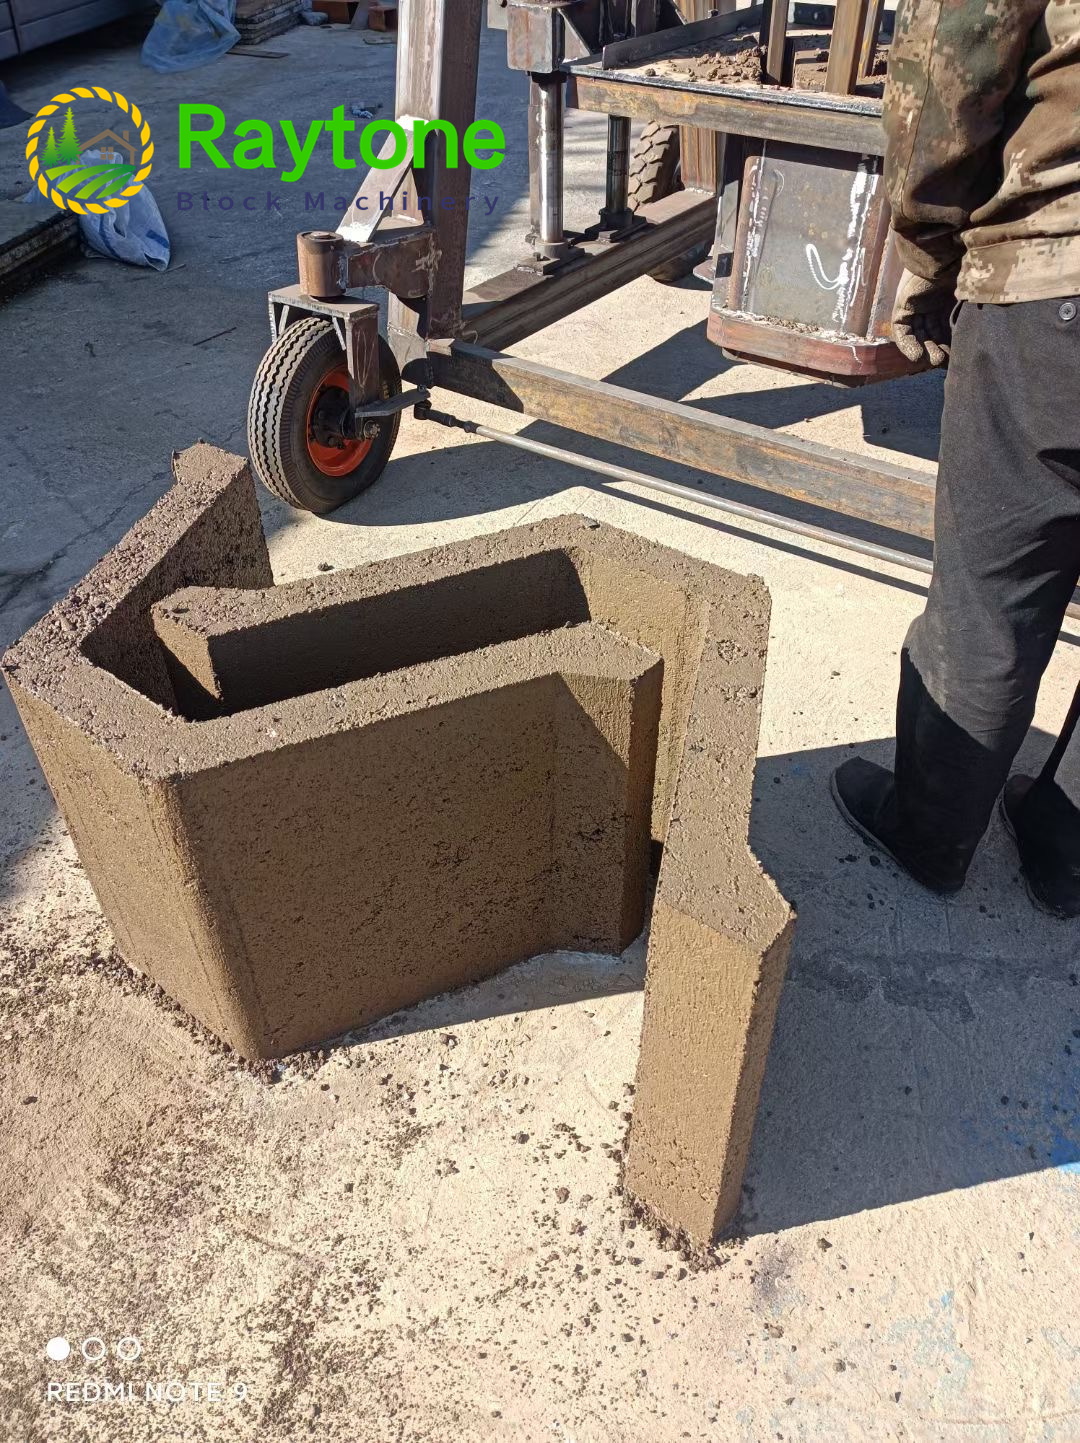 HX-100 Concrete U Channel Cement Culvert Making Machine-RAYTONE- የማሽን ማምረቻ በጥሩ አገልግሎት፣የኮንክሪት ማገጃ ማሽን፣የጡብ ማሽን፣የማገጃ ማሽን፣የማገጃ ማሽን የጡብ ማሽን ማምረቻ፣ አውቶማቲክ ማገጃ ማሽን፣ የሞባይል ማገጃ ማሽን፣ አውቶማቲክ የጡብ ማሽን፣ ከፊል አውቶማቲክ ማገጃ ማሽን፣ በእጅ ማገጃ ማሽን፣ ከፊል አውቶማቲክ ጡብ ማሽን፣ በእጅ የጡብ ማሽን pallet፣ፋይበር ጡብ ፓሌት፣የሸክላ ጡብ ማሽን